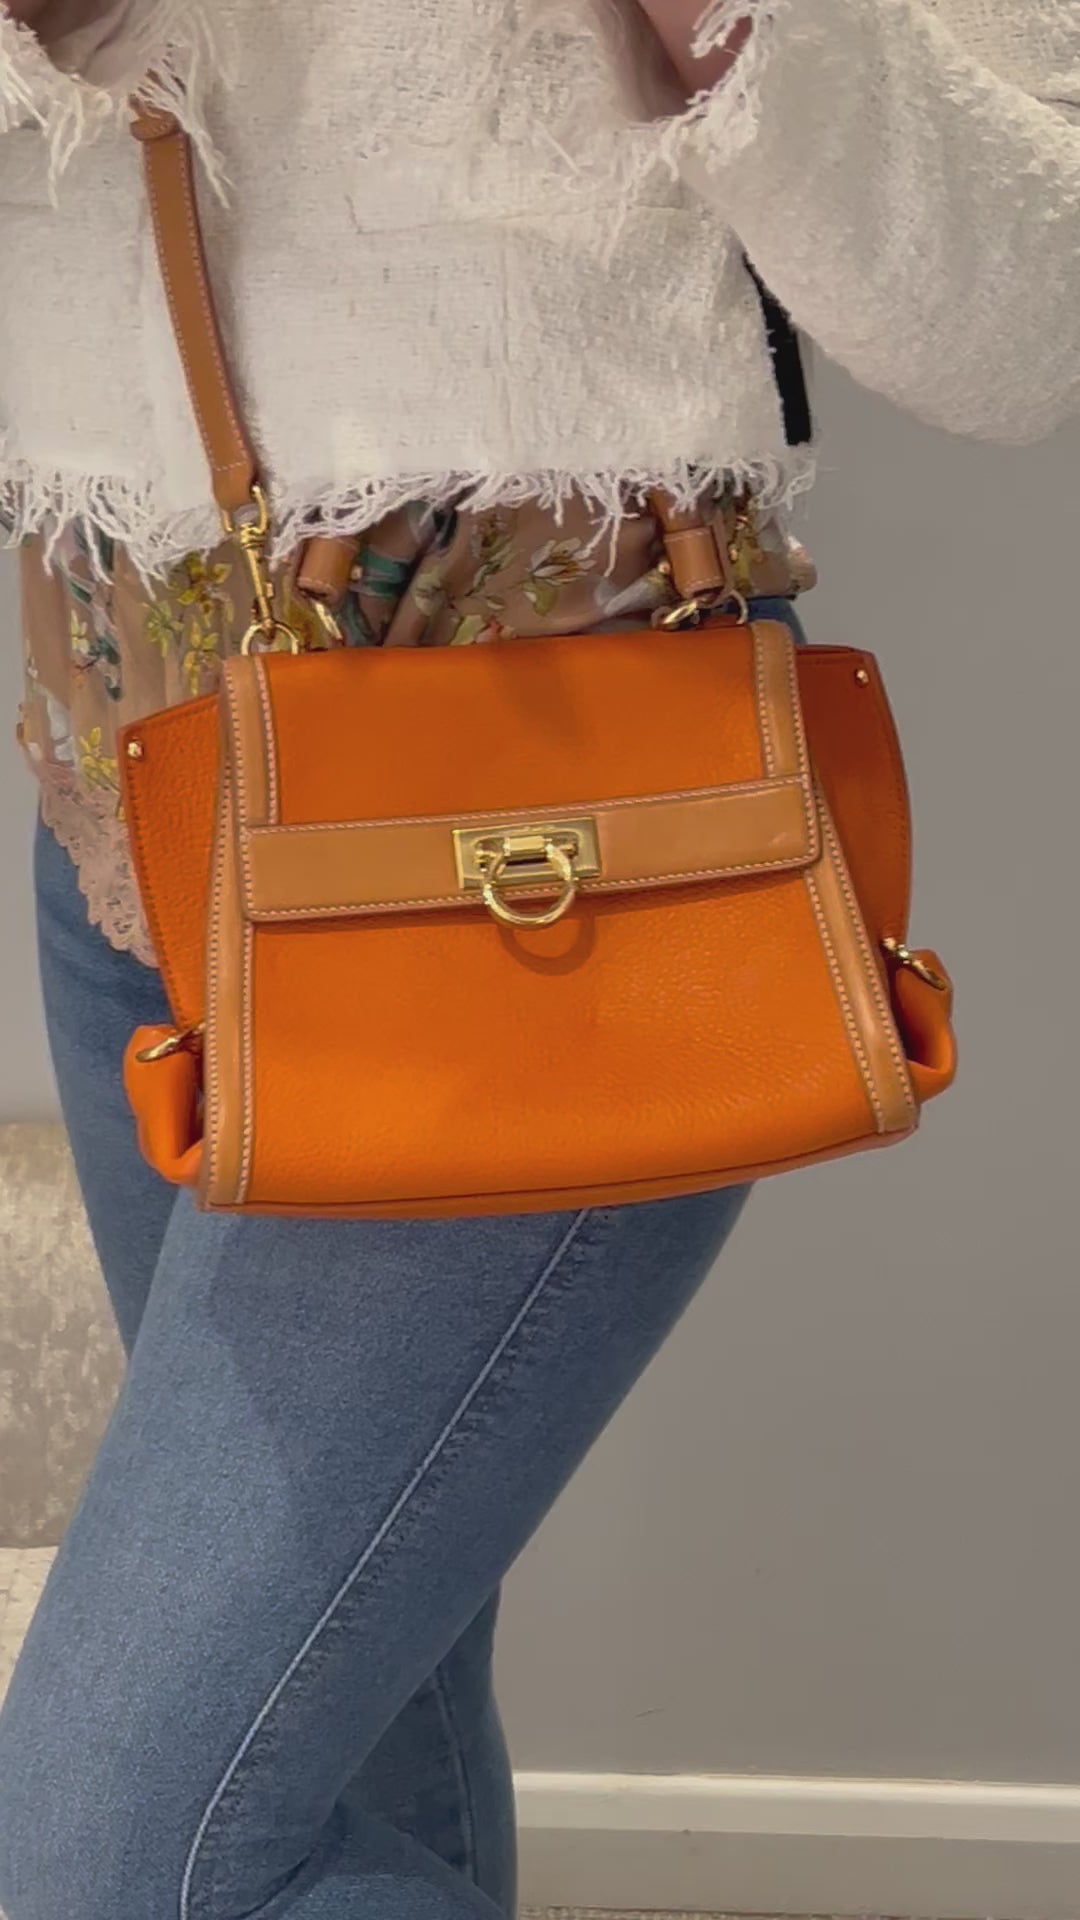 SALVATORE FERRAGAMO Two Tone Orange Leather Small Sofia Top Handle Bag